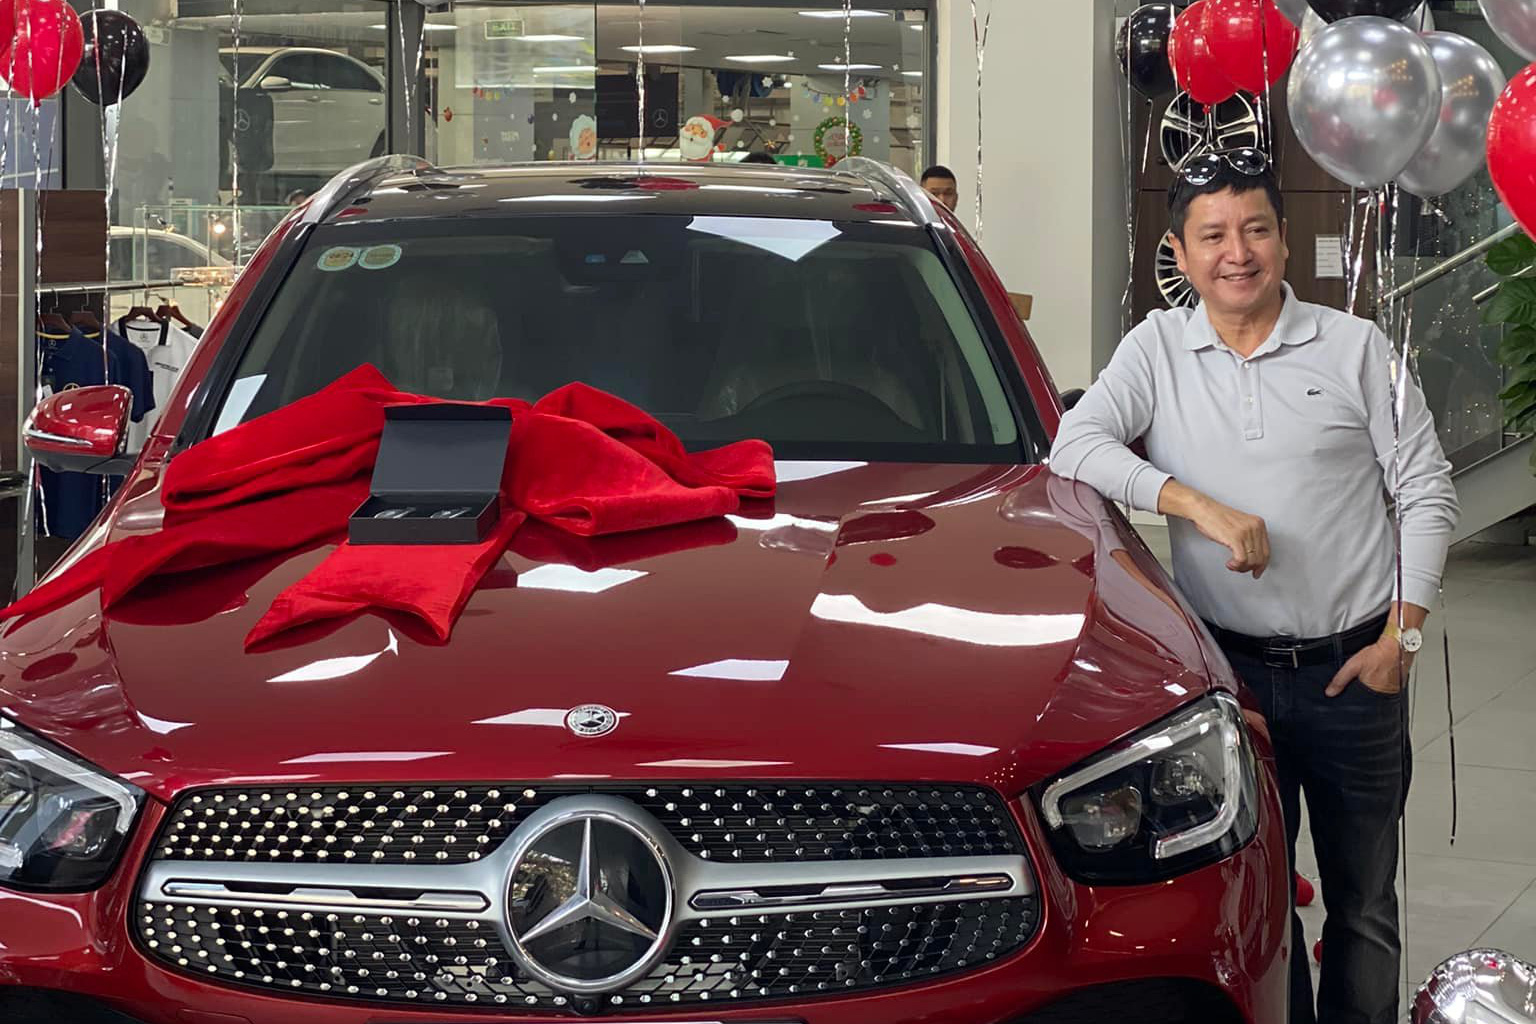 'Táo giao thông' cùng Á hậu doanh nhân sắm 'cá chép' Mercedes-Benz GLC 300 giá 2,5 tỷ đồng đón năm mới